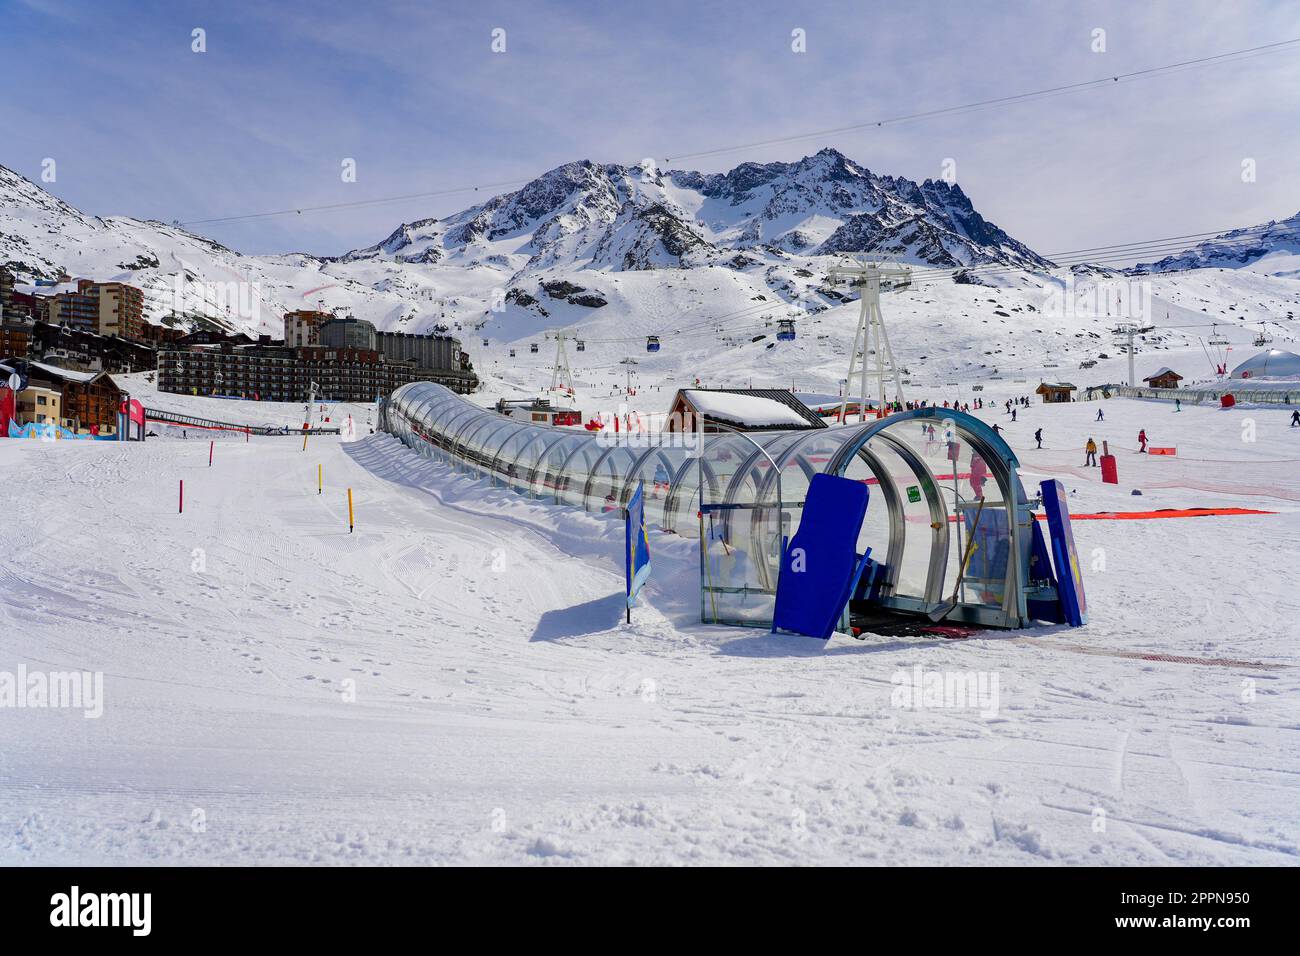 Tapis Roulant dans un Tunnel de Verre sur la piste de Ski d'une école de Ski de Val Thorens dans les Alpes francaises en hiver Stockfoto